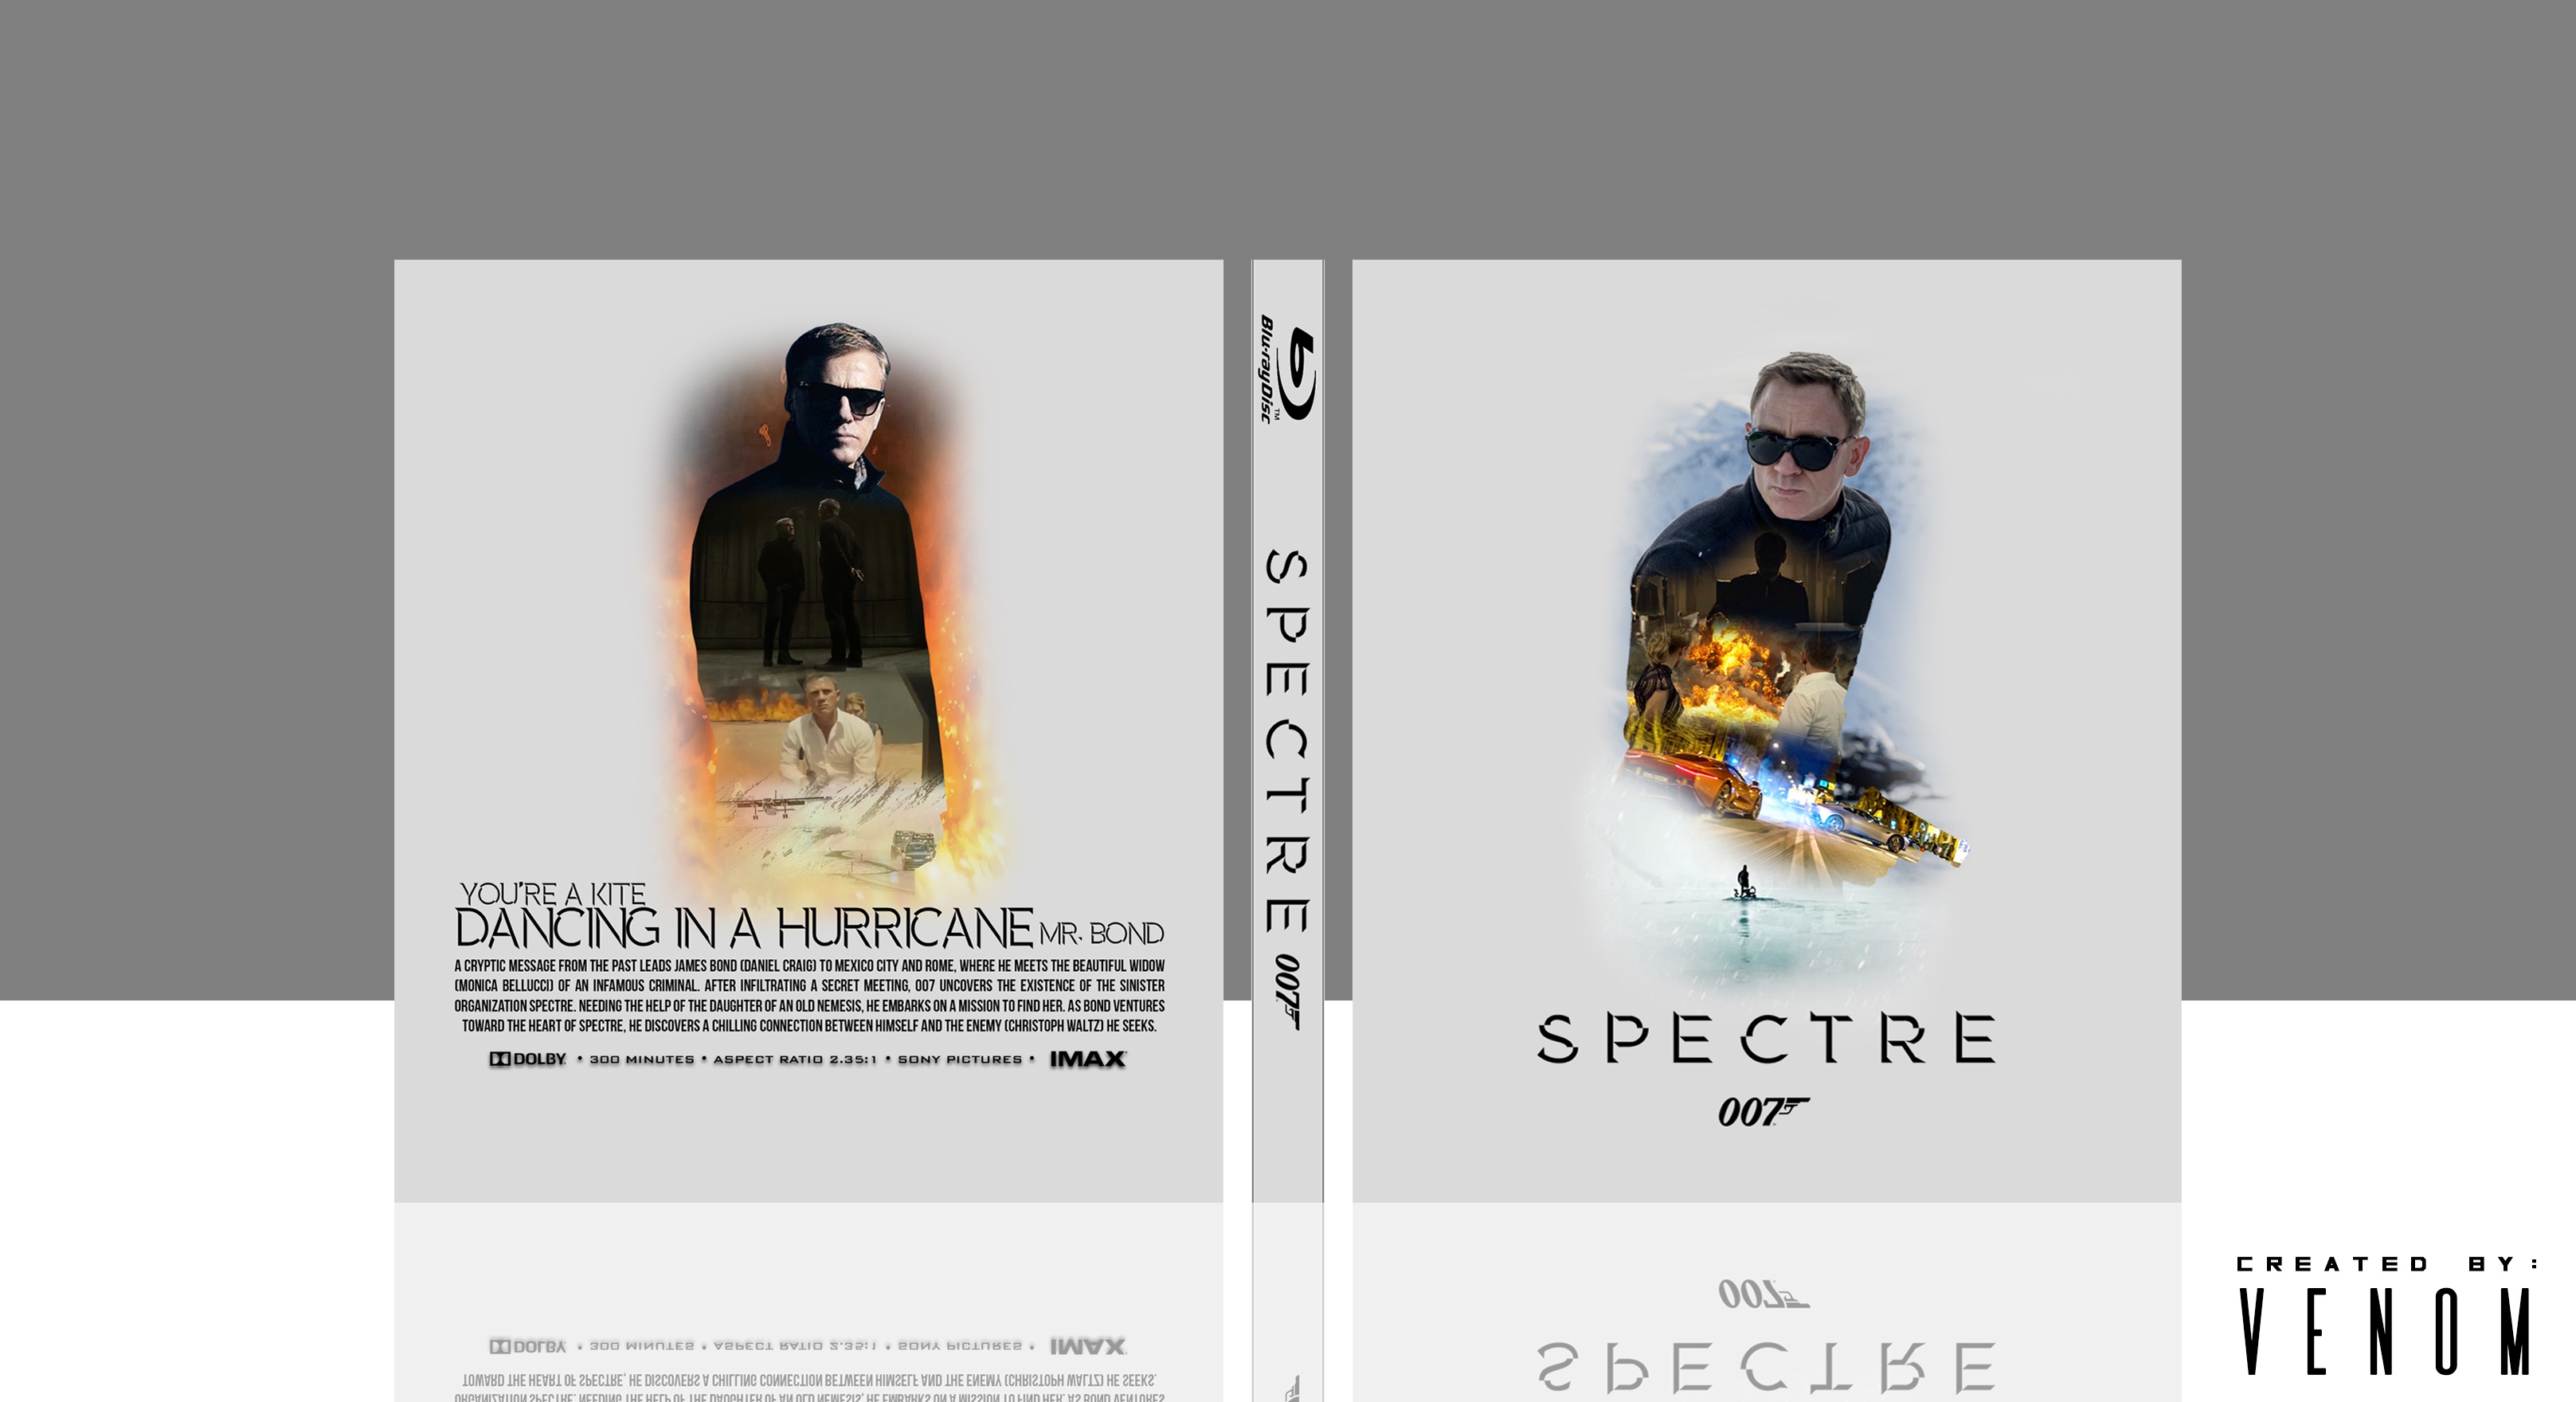 Spectre box cover